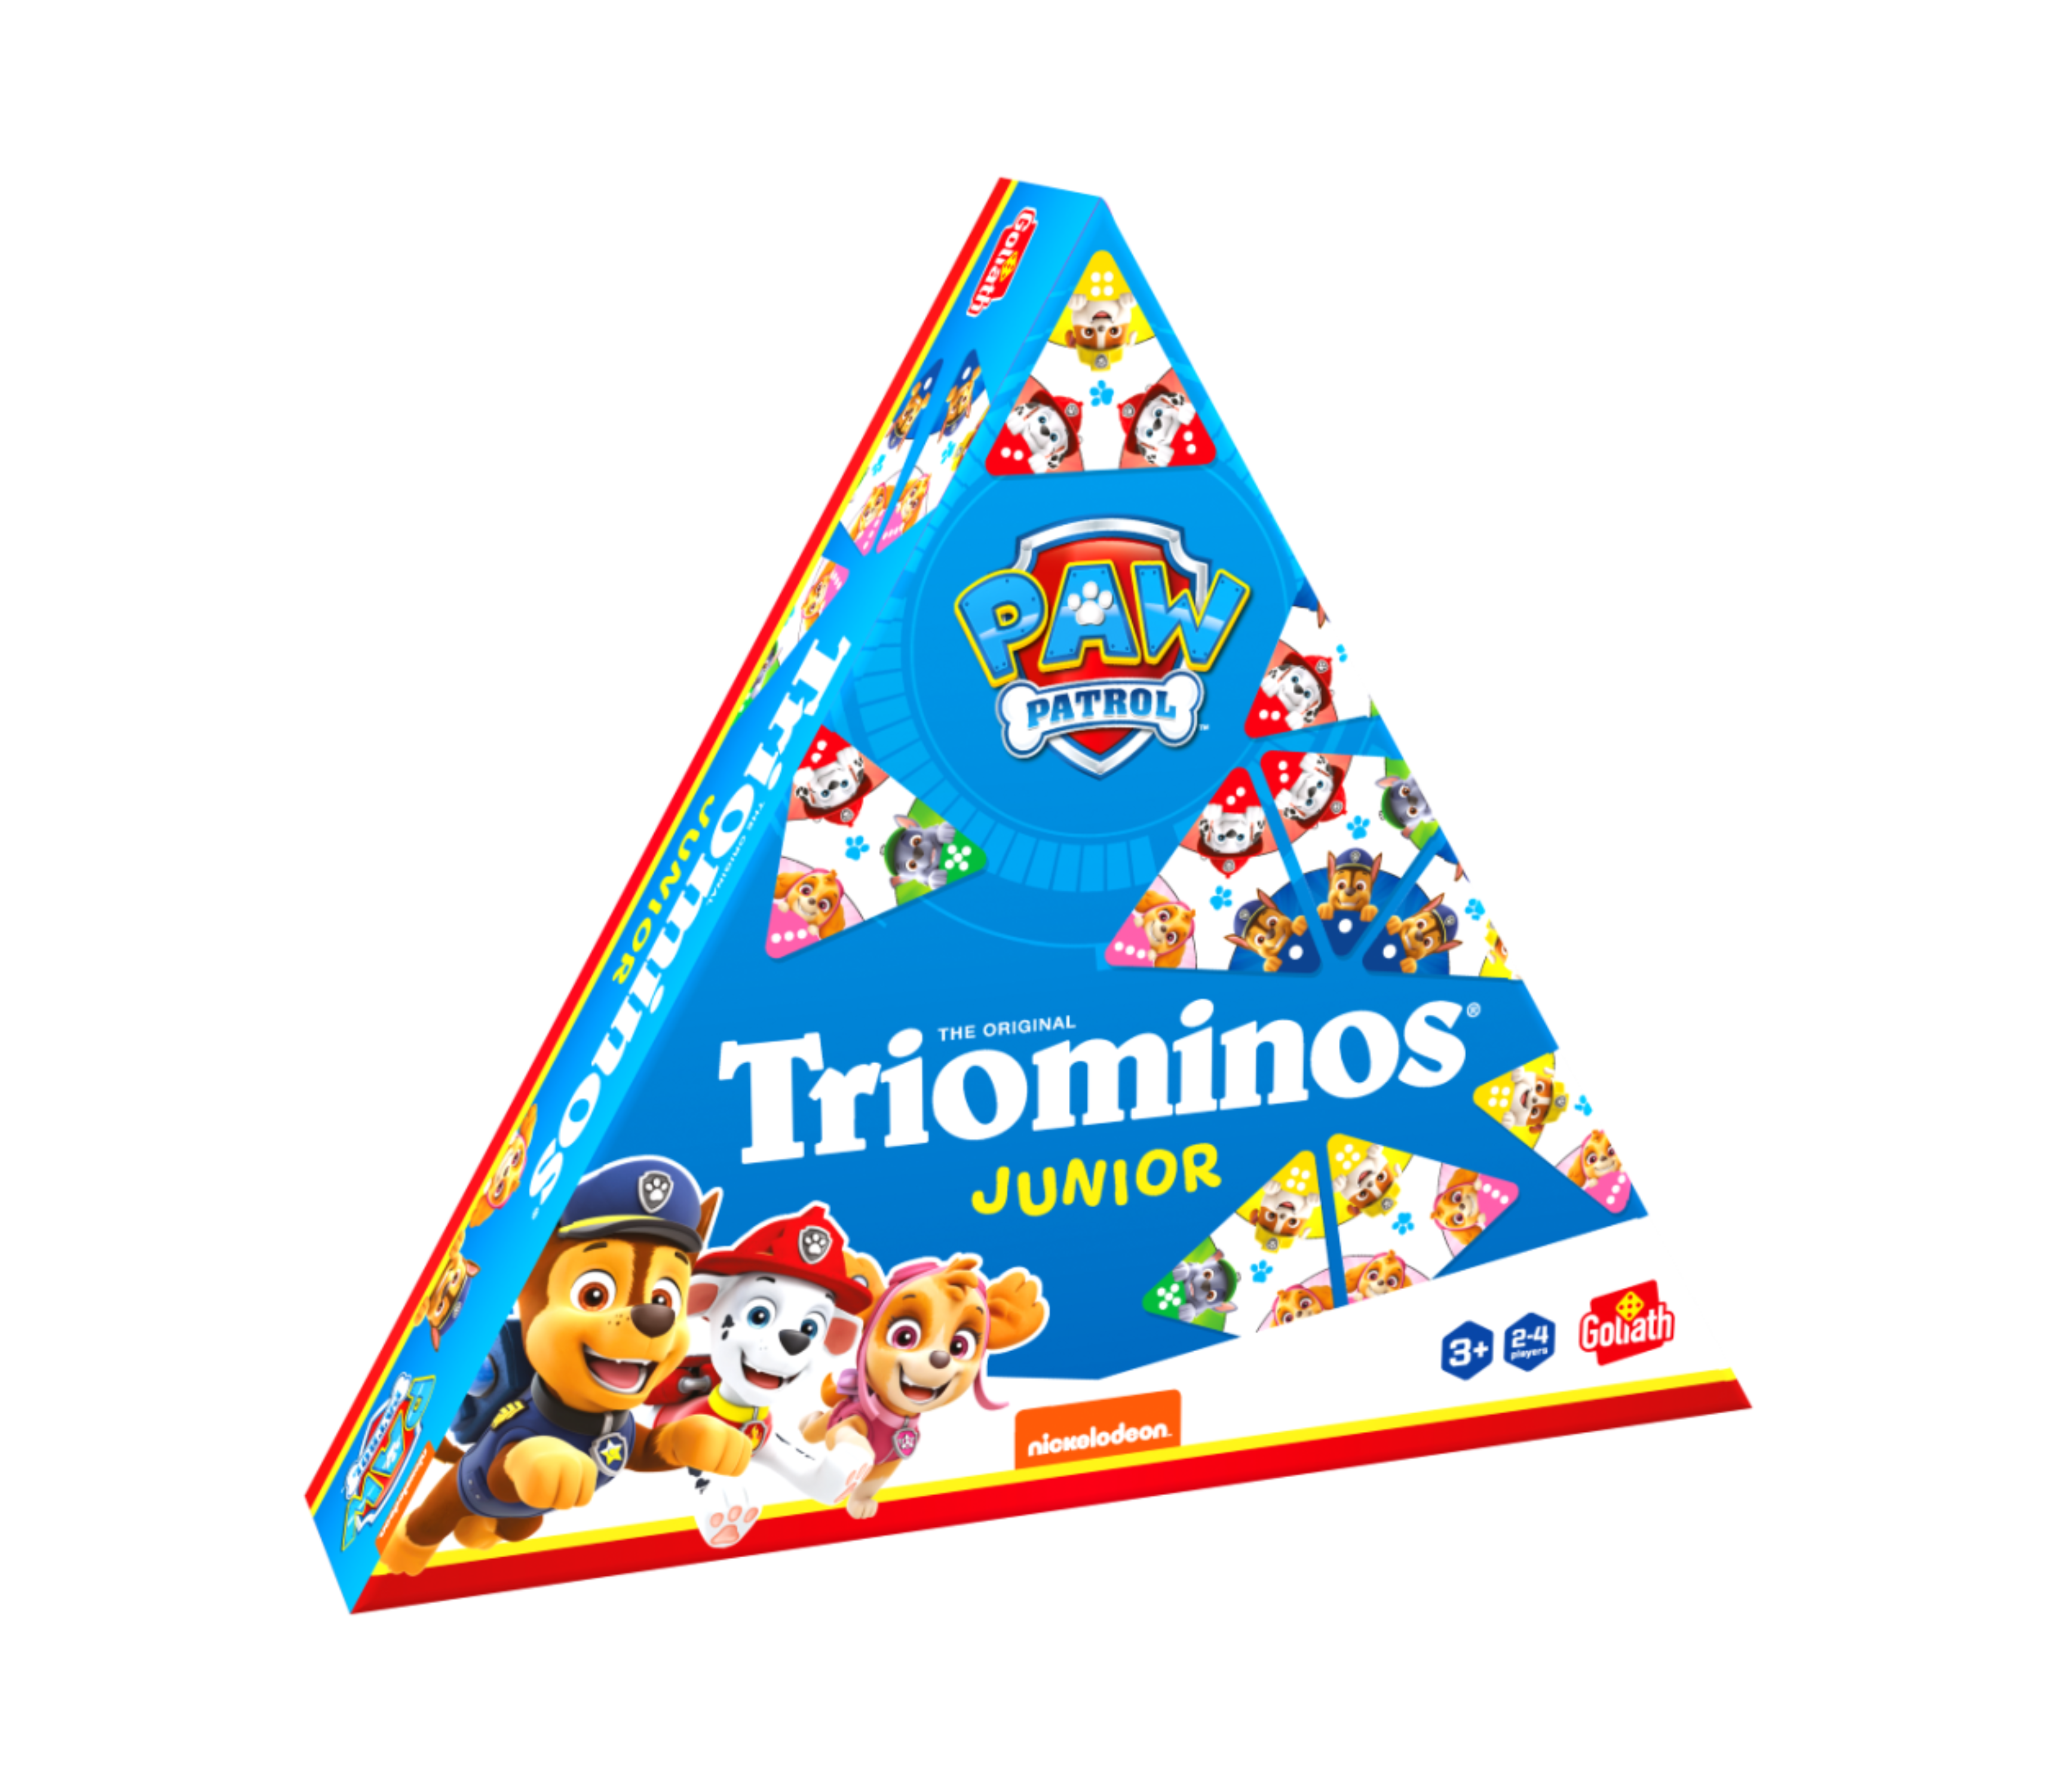 De doos van het spel Triominos Junior Paw Patrol vnauit een linkerhoek